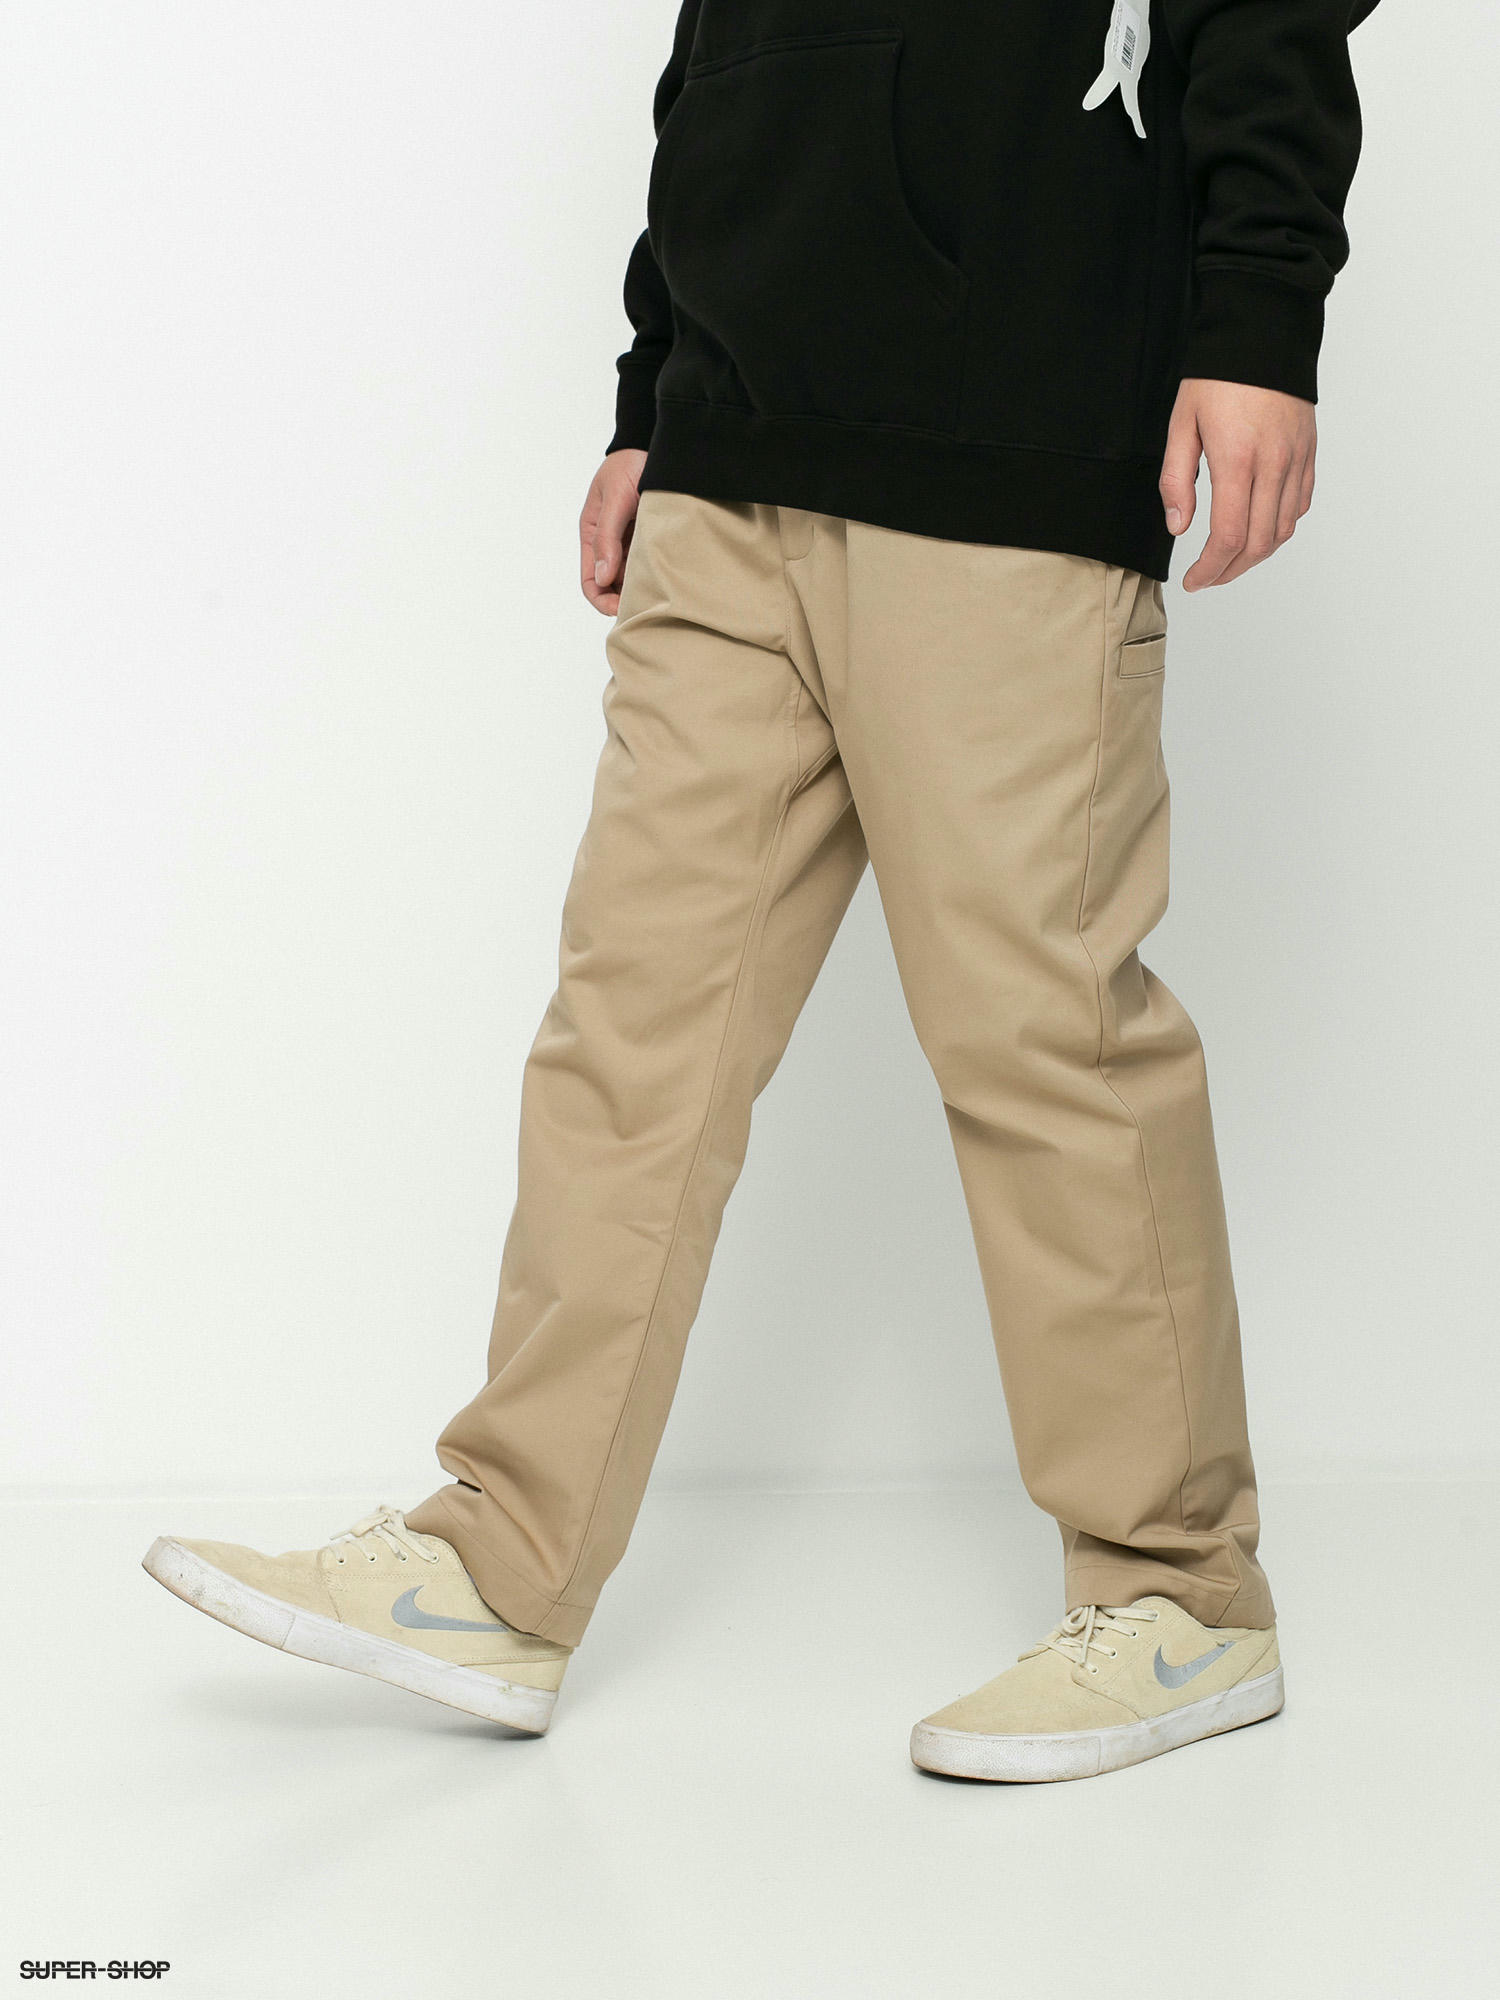 Nike SB Dry Pull On Chino Pants (khaki)